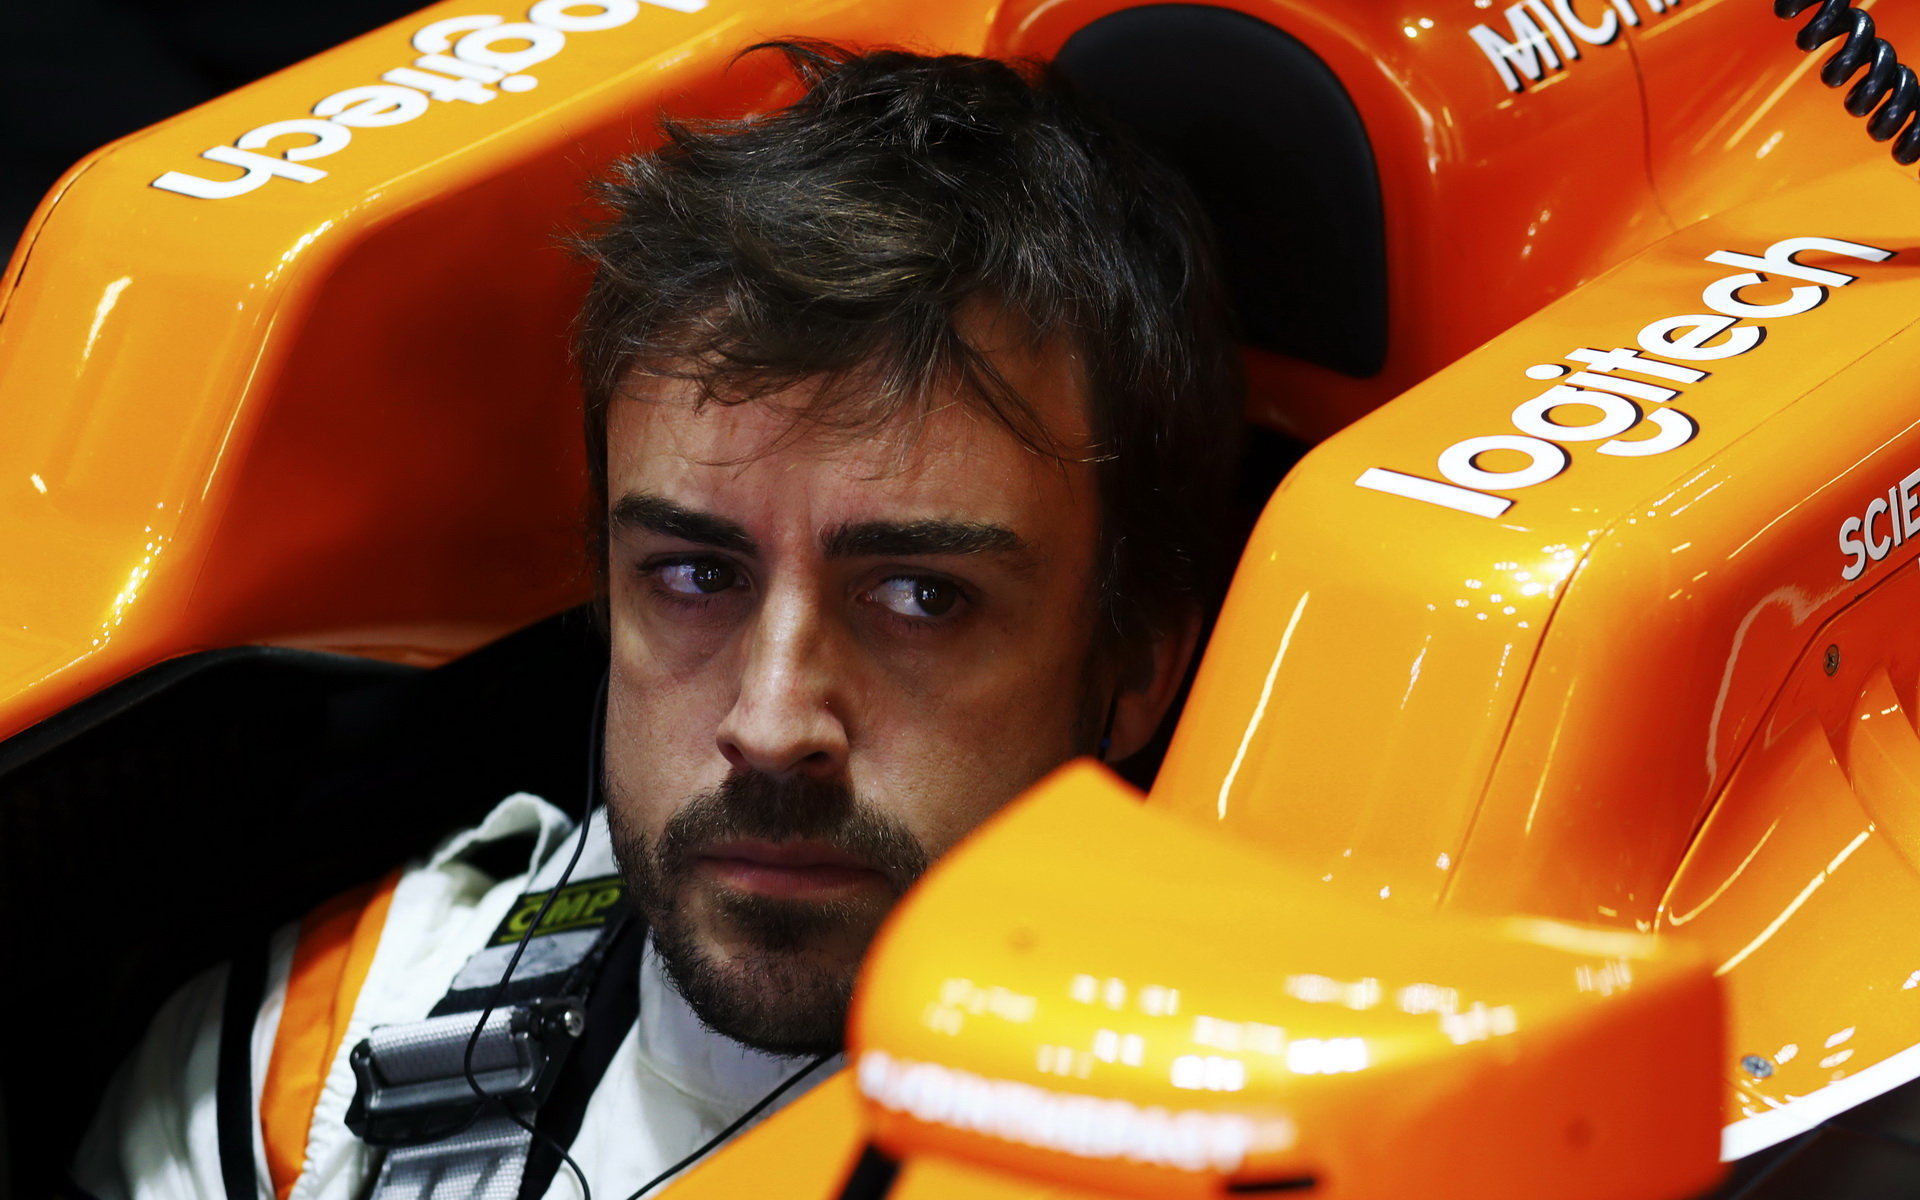 Fernando Alonso Hondu neustále kritizoval, v Japonsku je svým přístupem zklamal